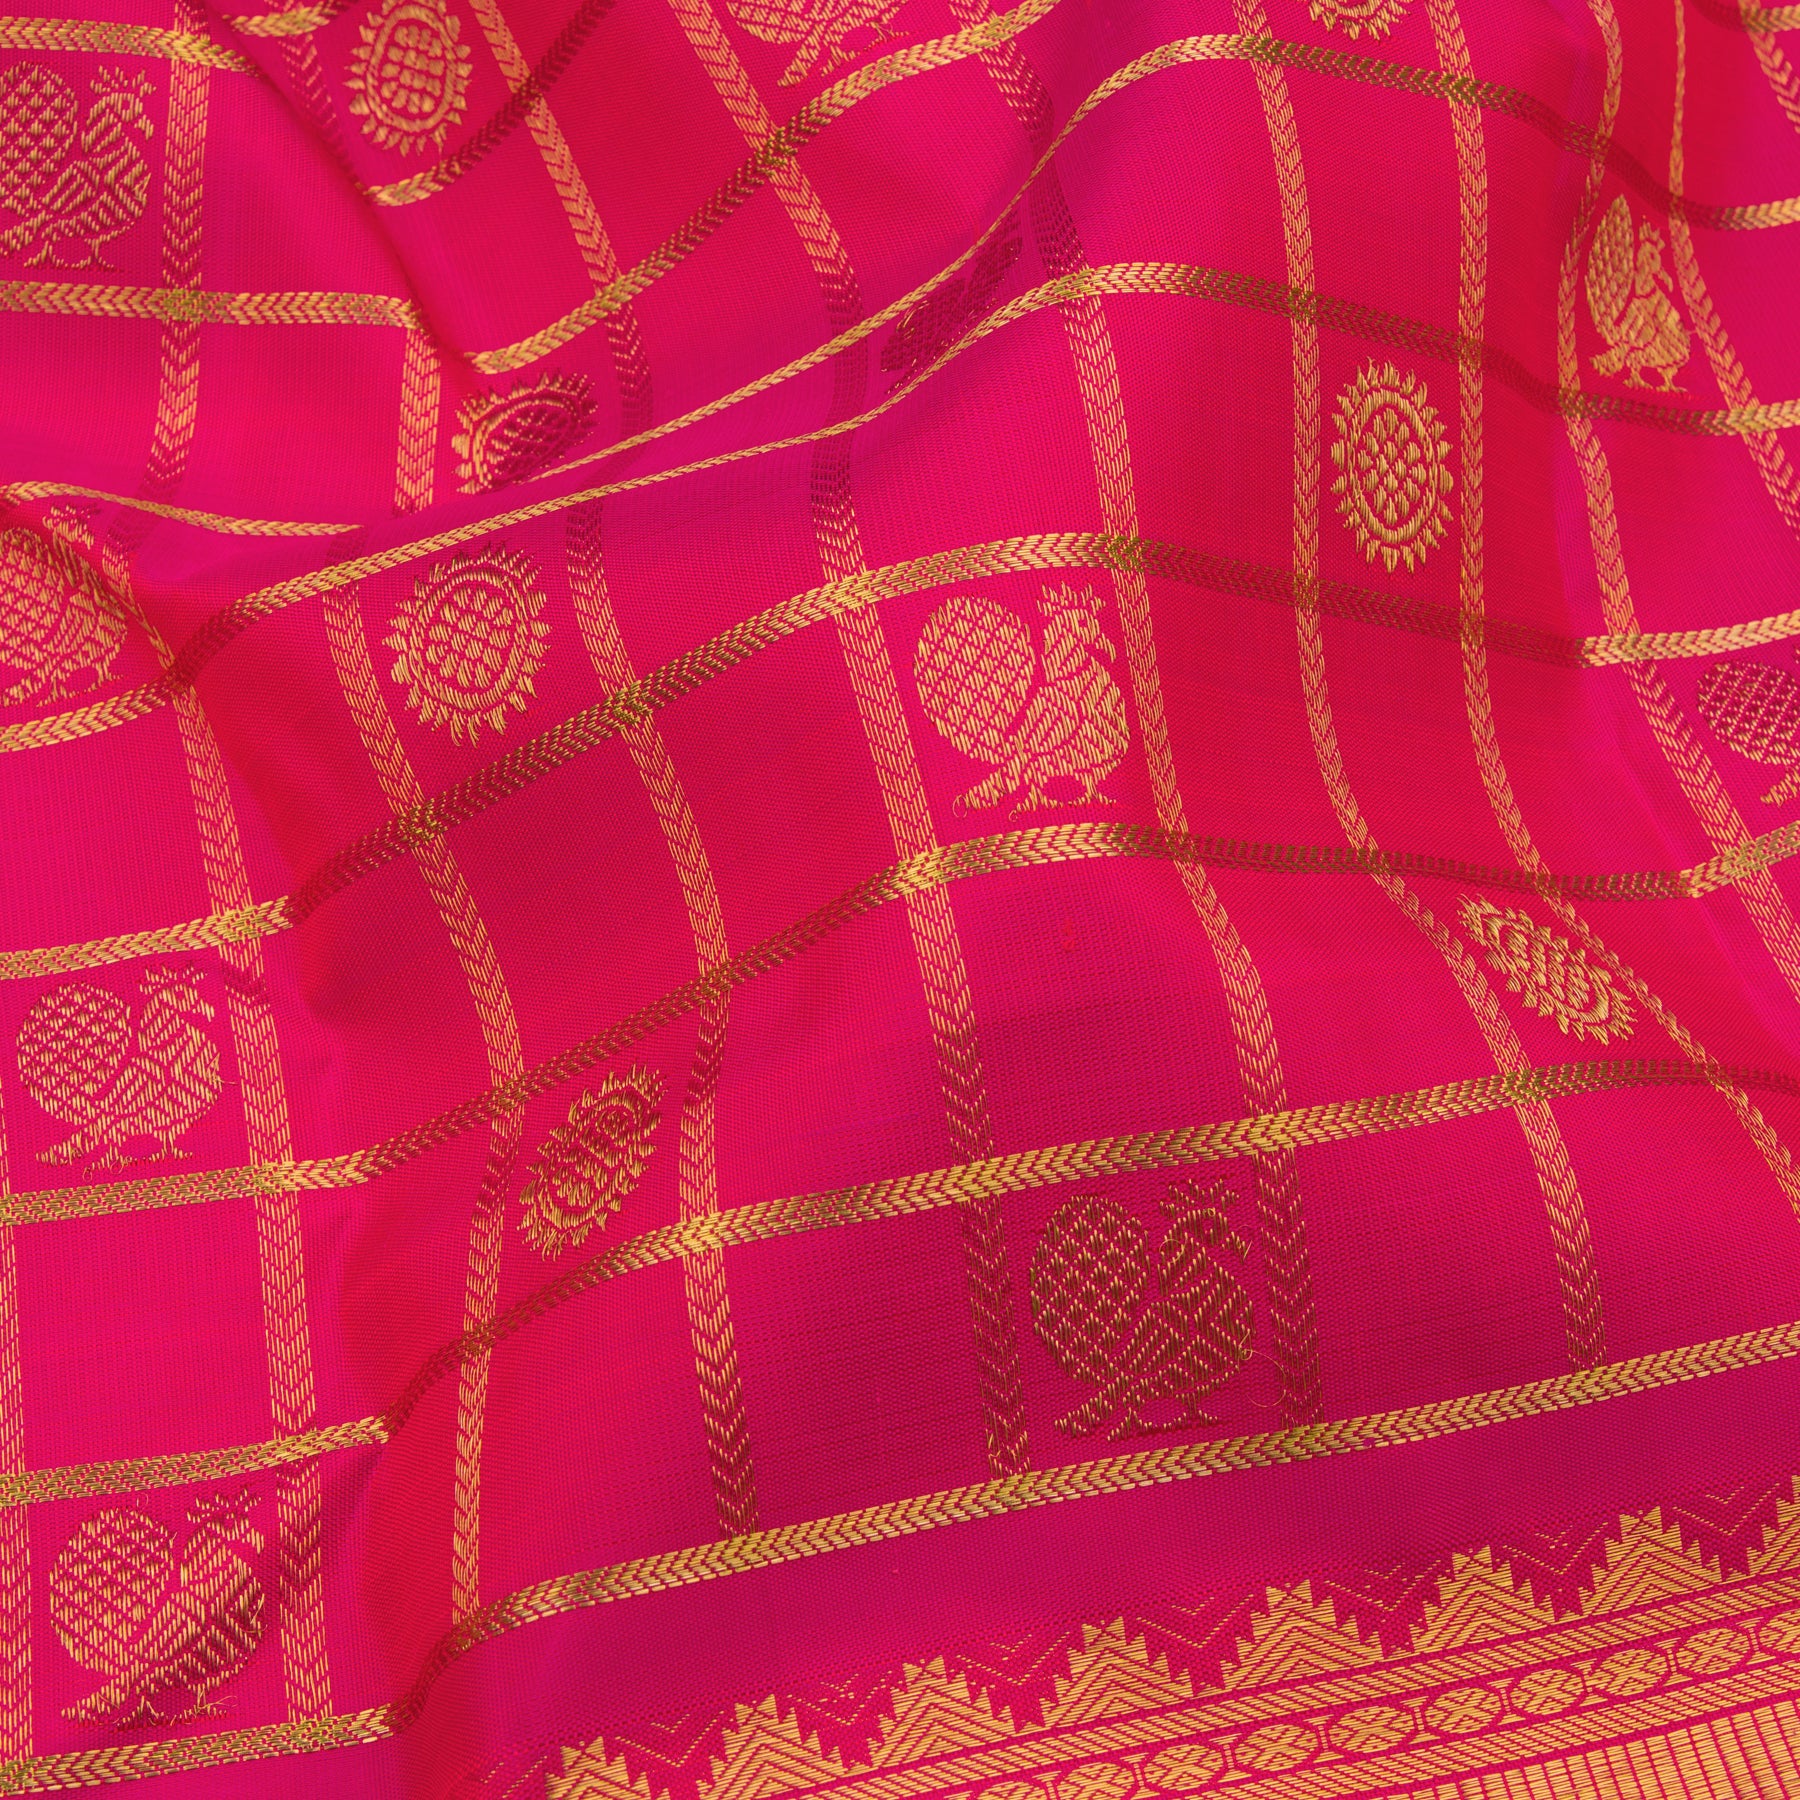 Kanakavalli Kanjivaram Silk Sari 22-110-HS001-02713 - Fabric View